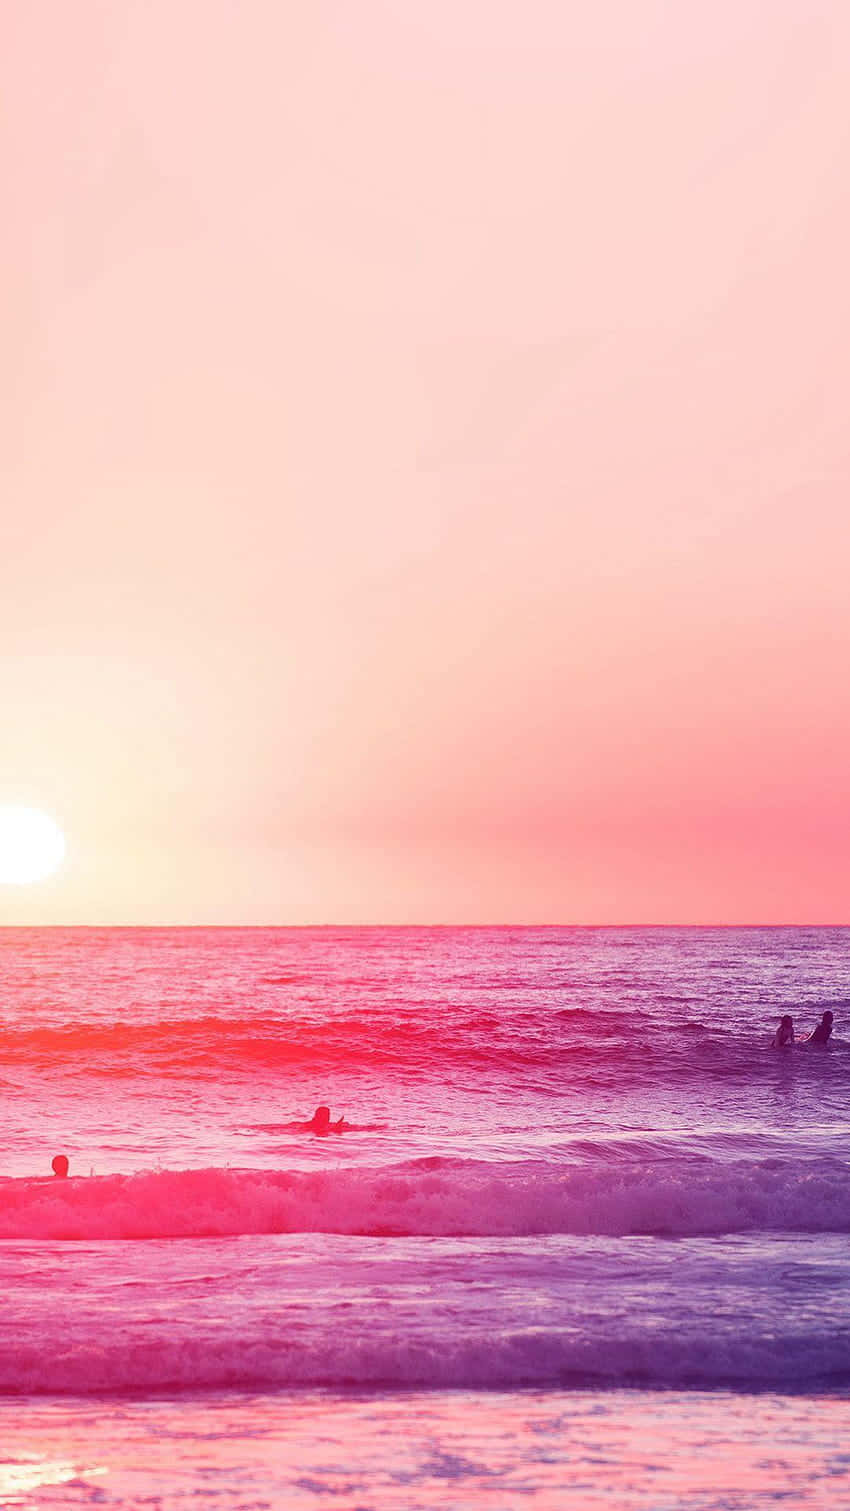 Entspannenan Einem Pinkfarbenen Strand Wallpaper